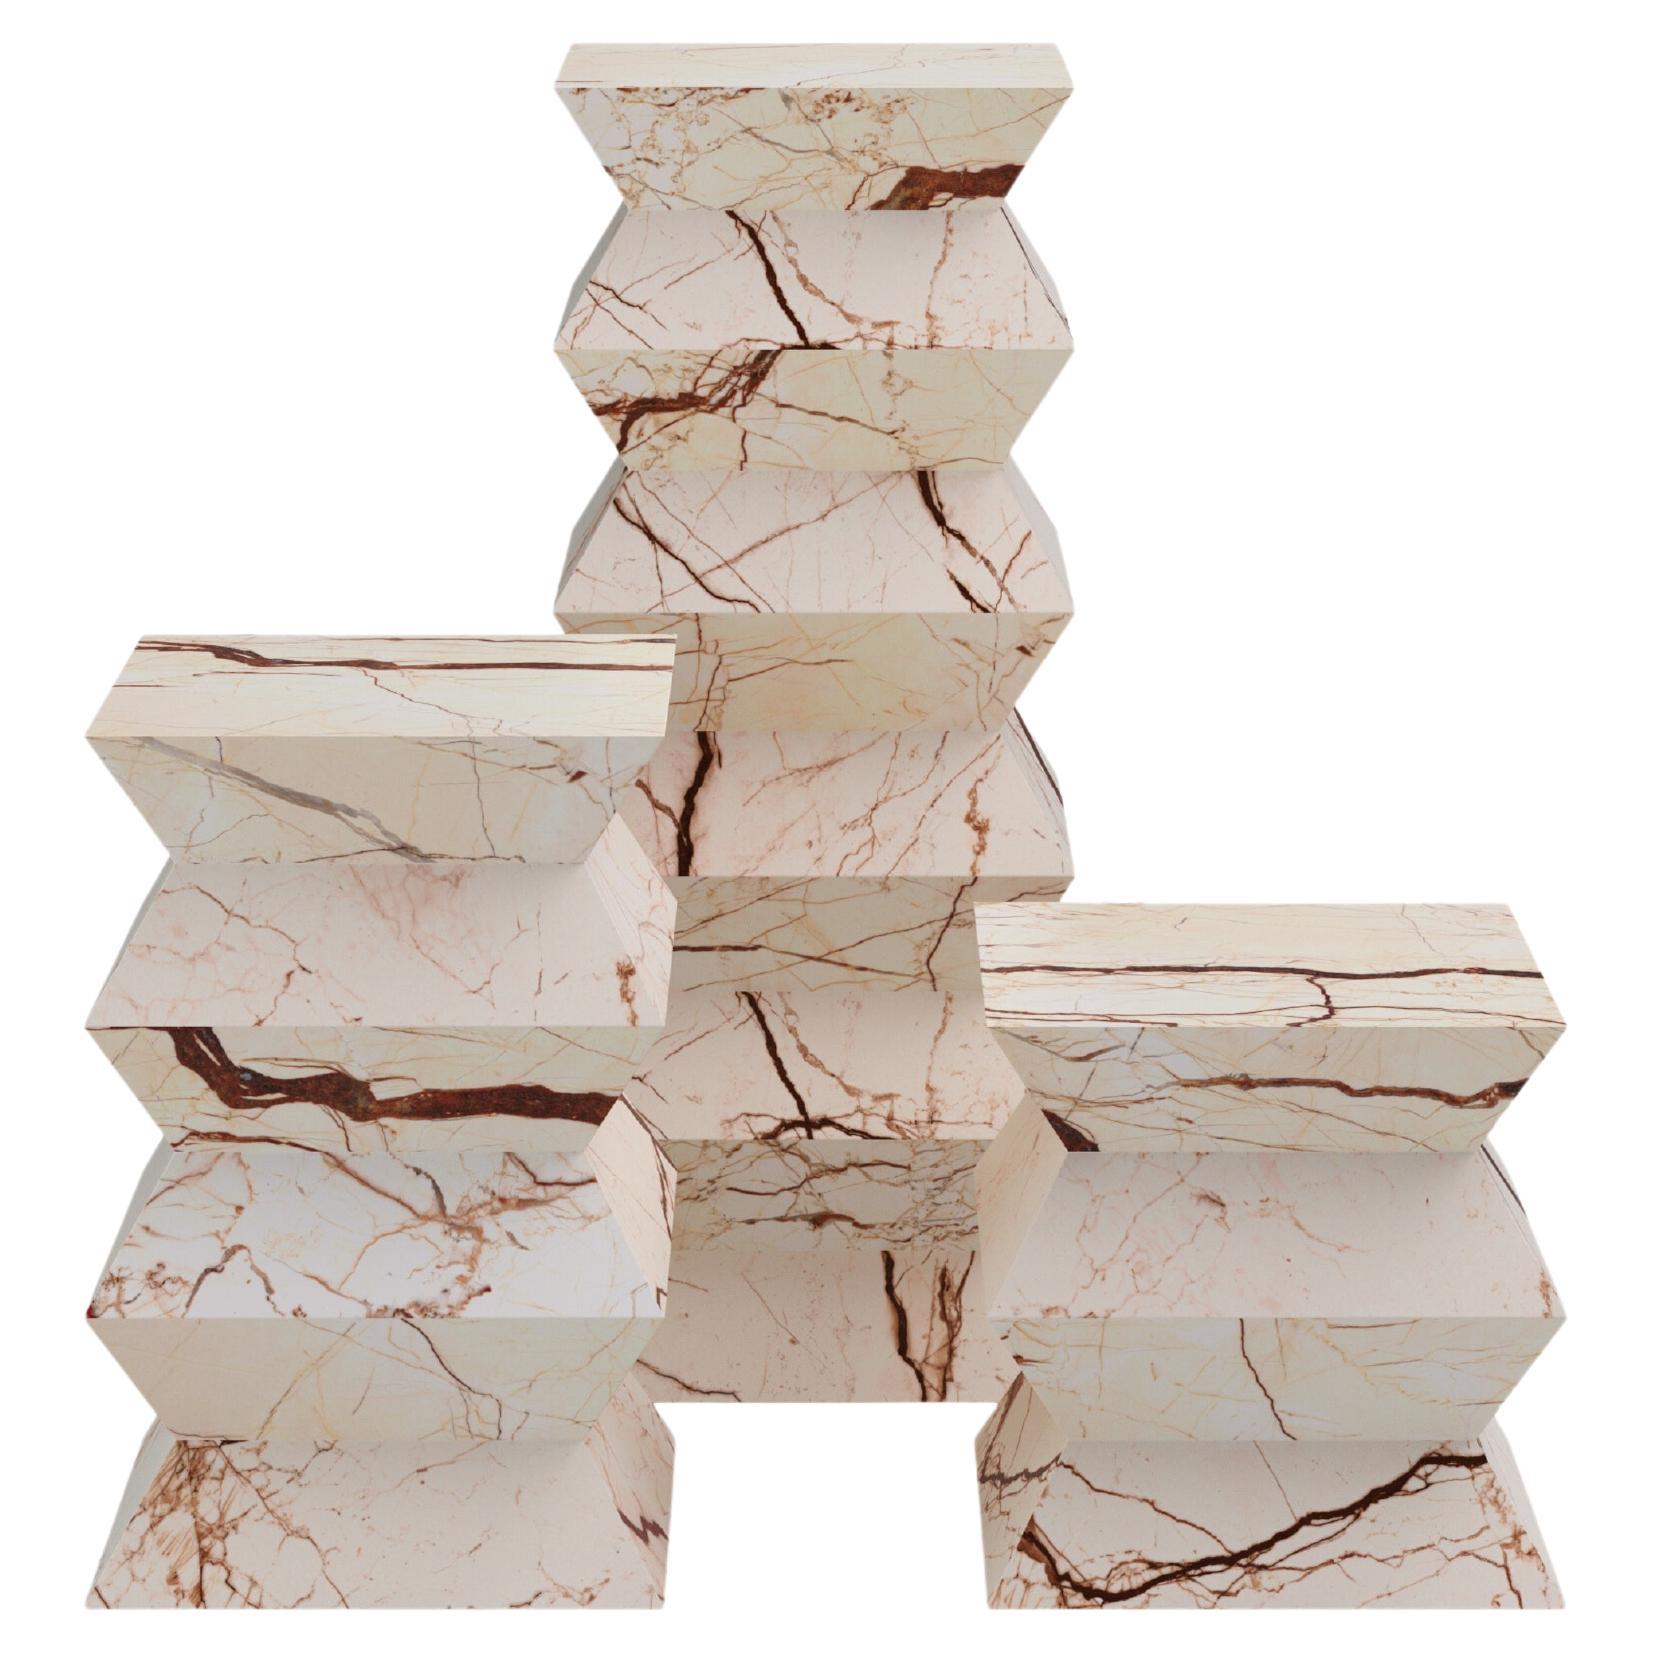 FORM(LA) Grinza Pedestal 16"L x 16"W x 24"H Sofita Beige Marble